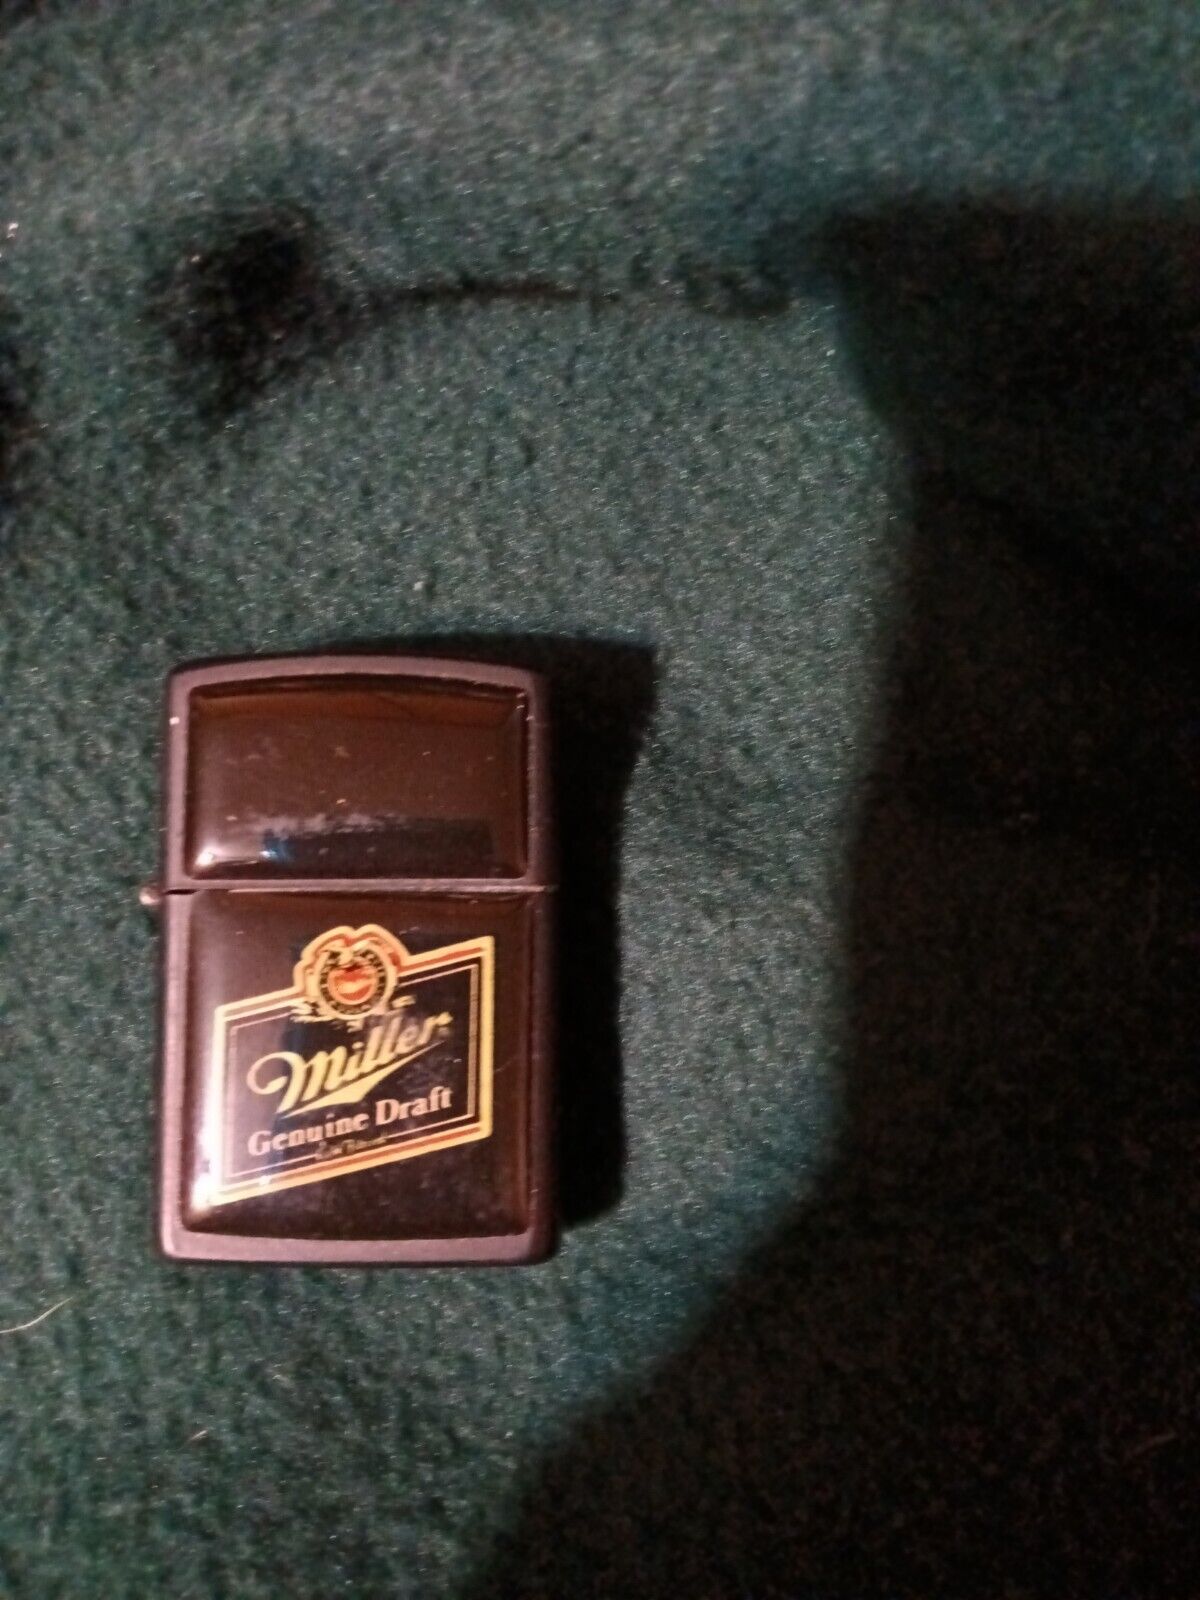 Miller Geniue Draft Cigarette Vintage Lighter